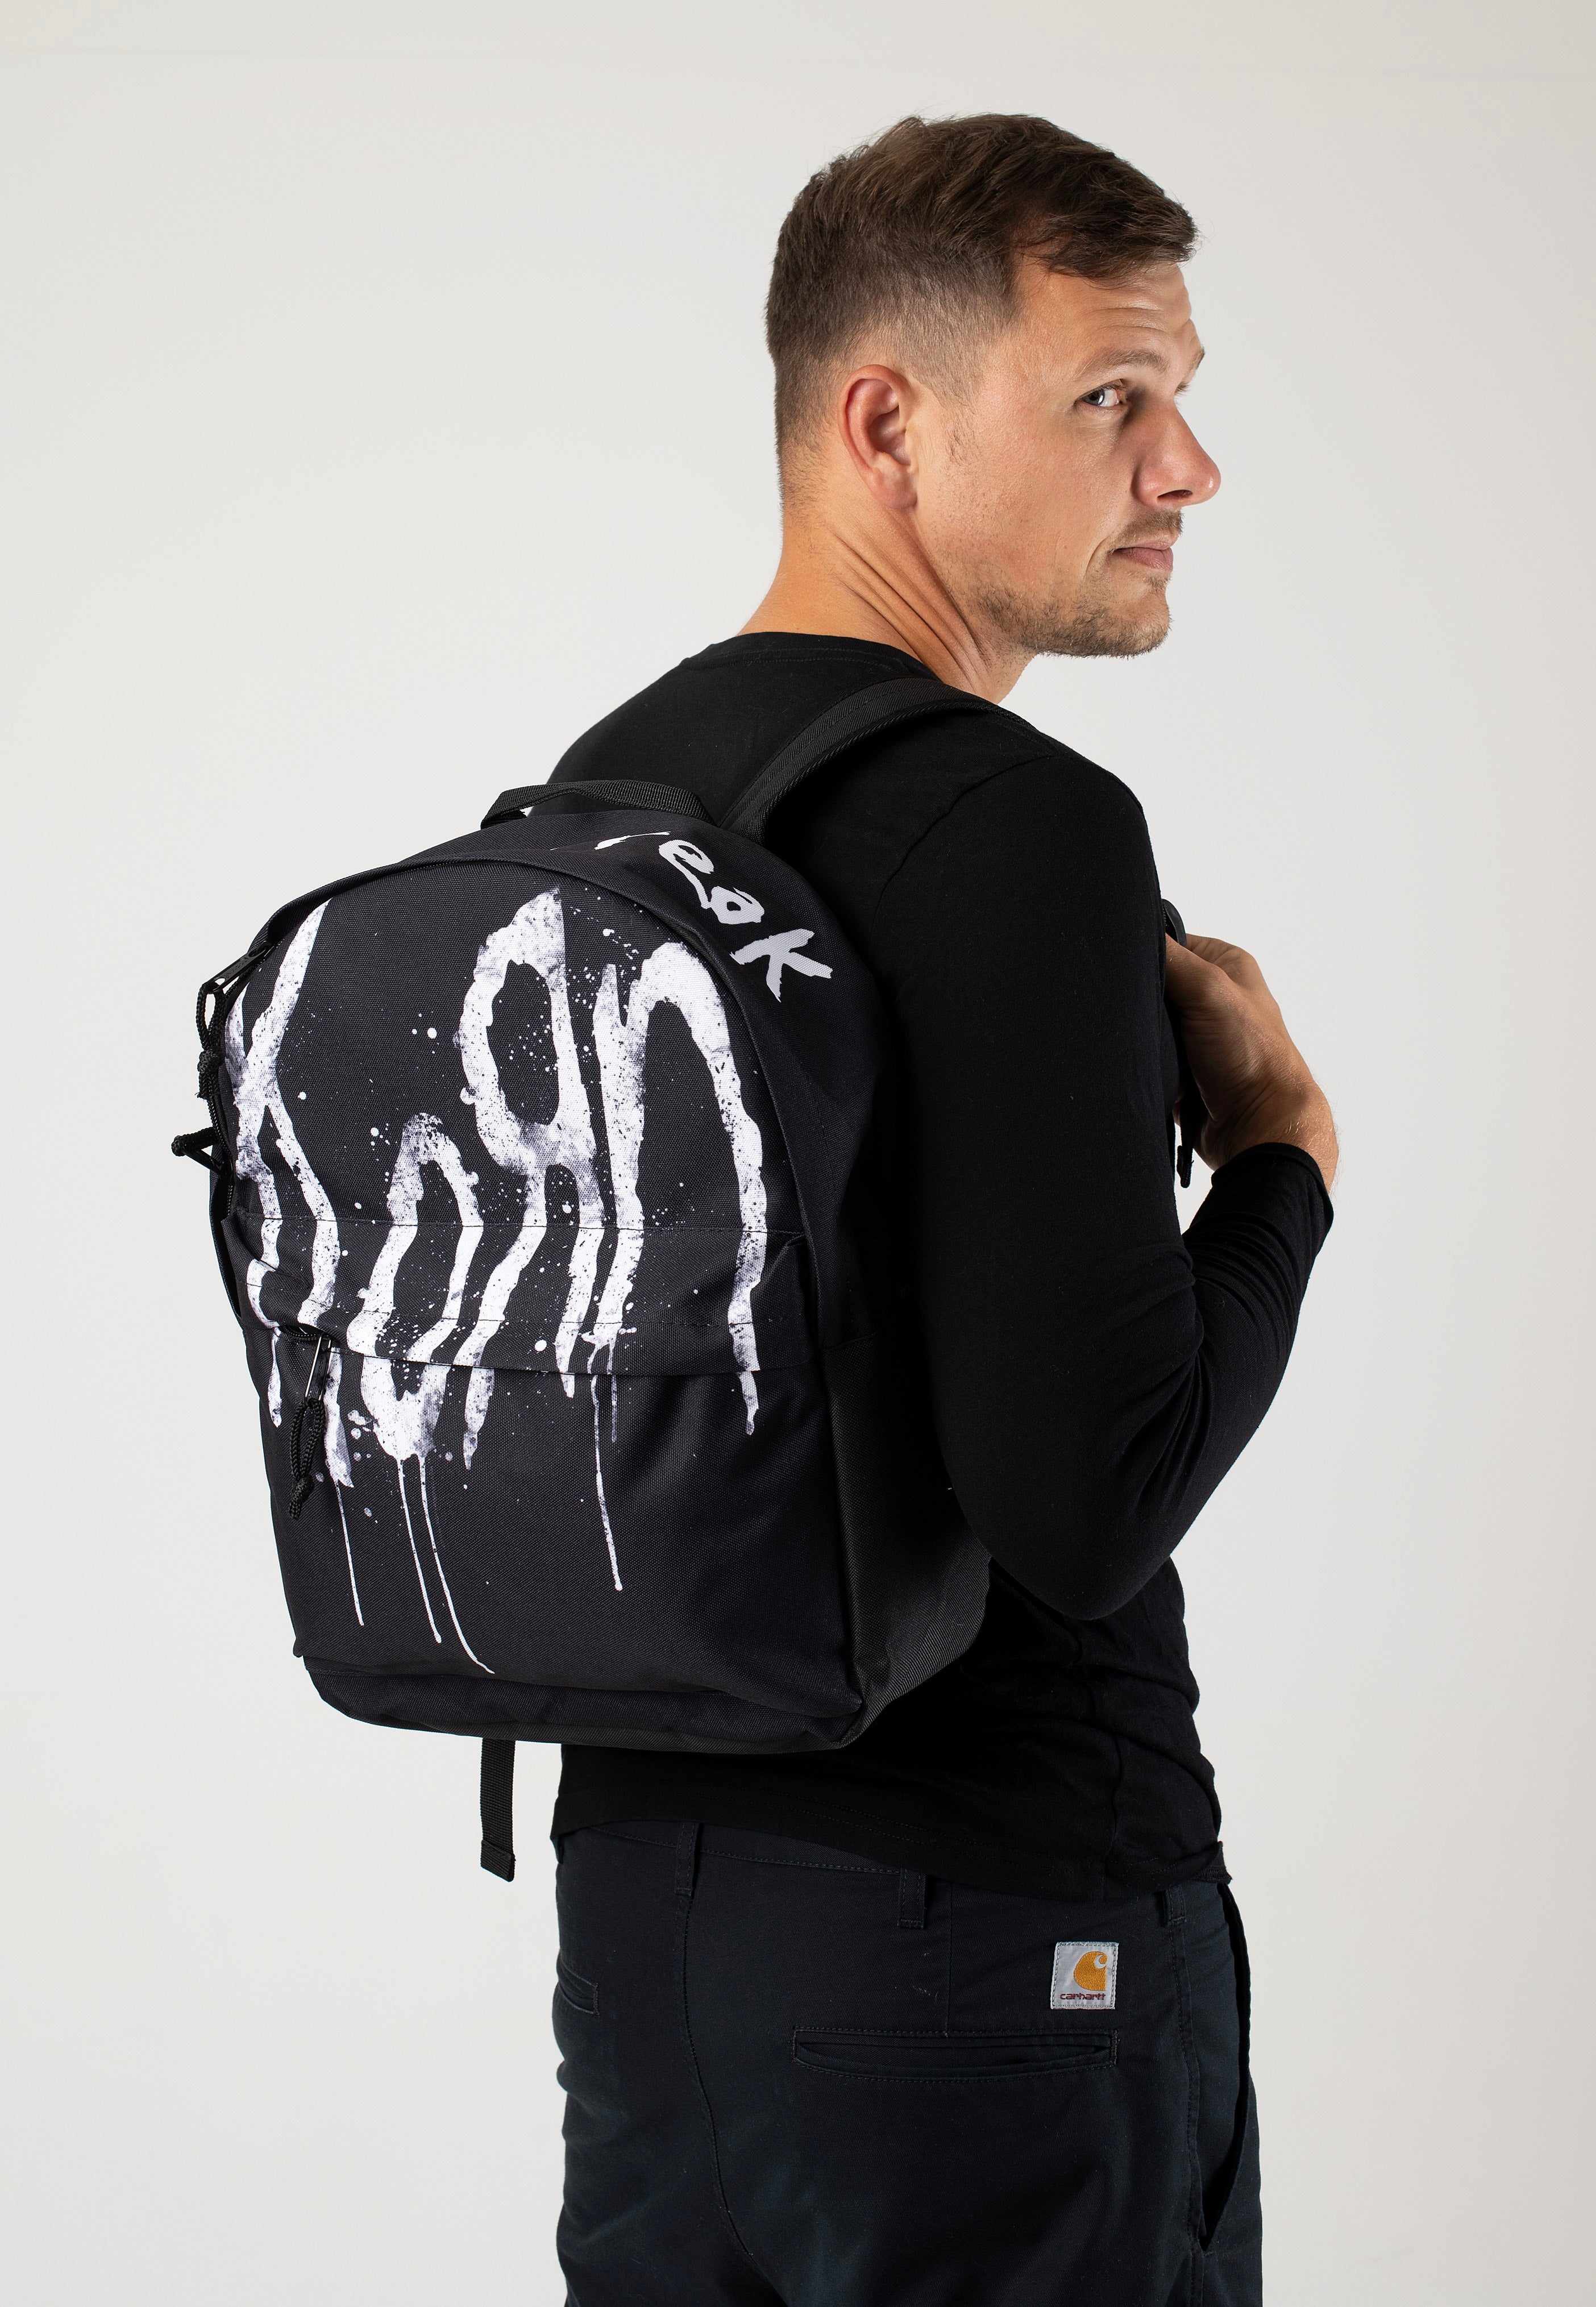 Korn - Still A Freak - Backpack